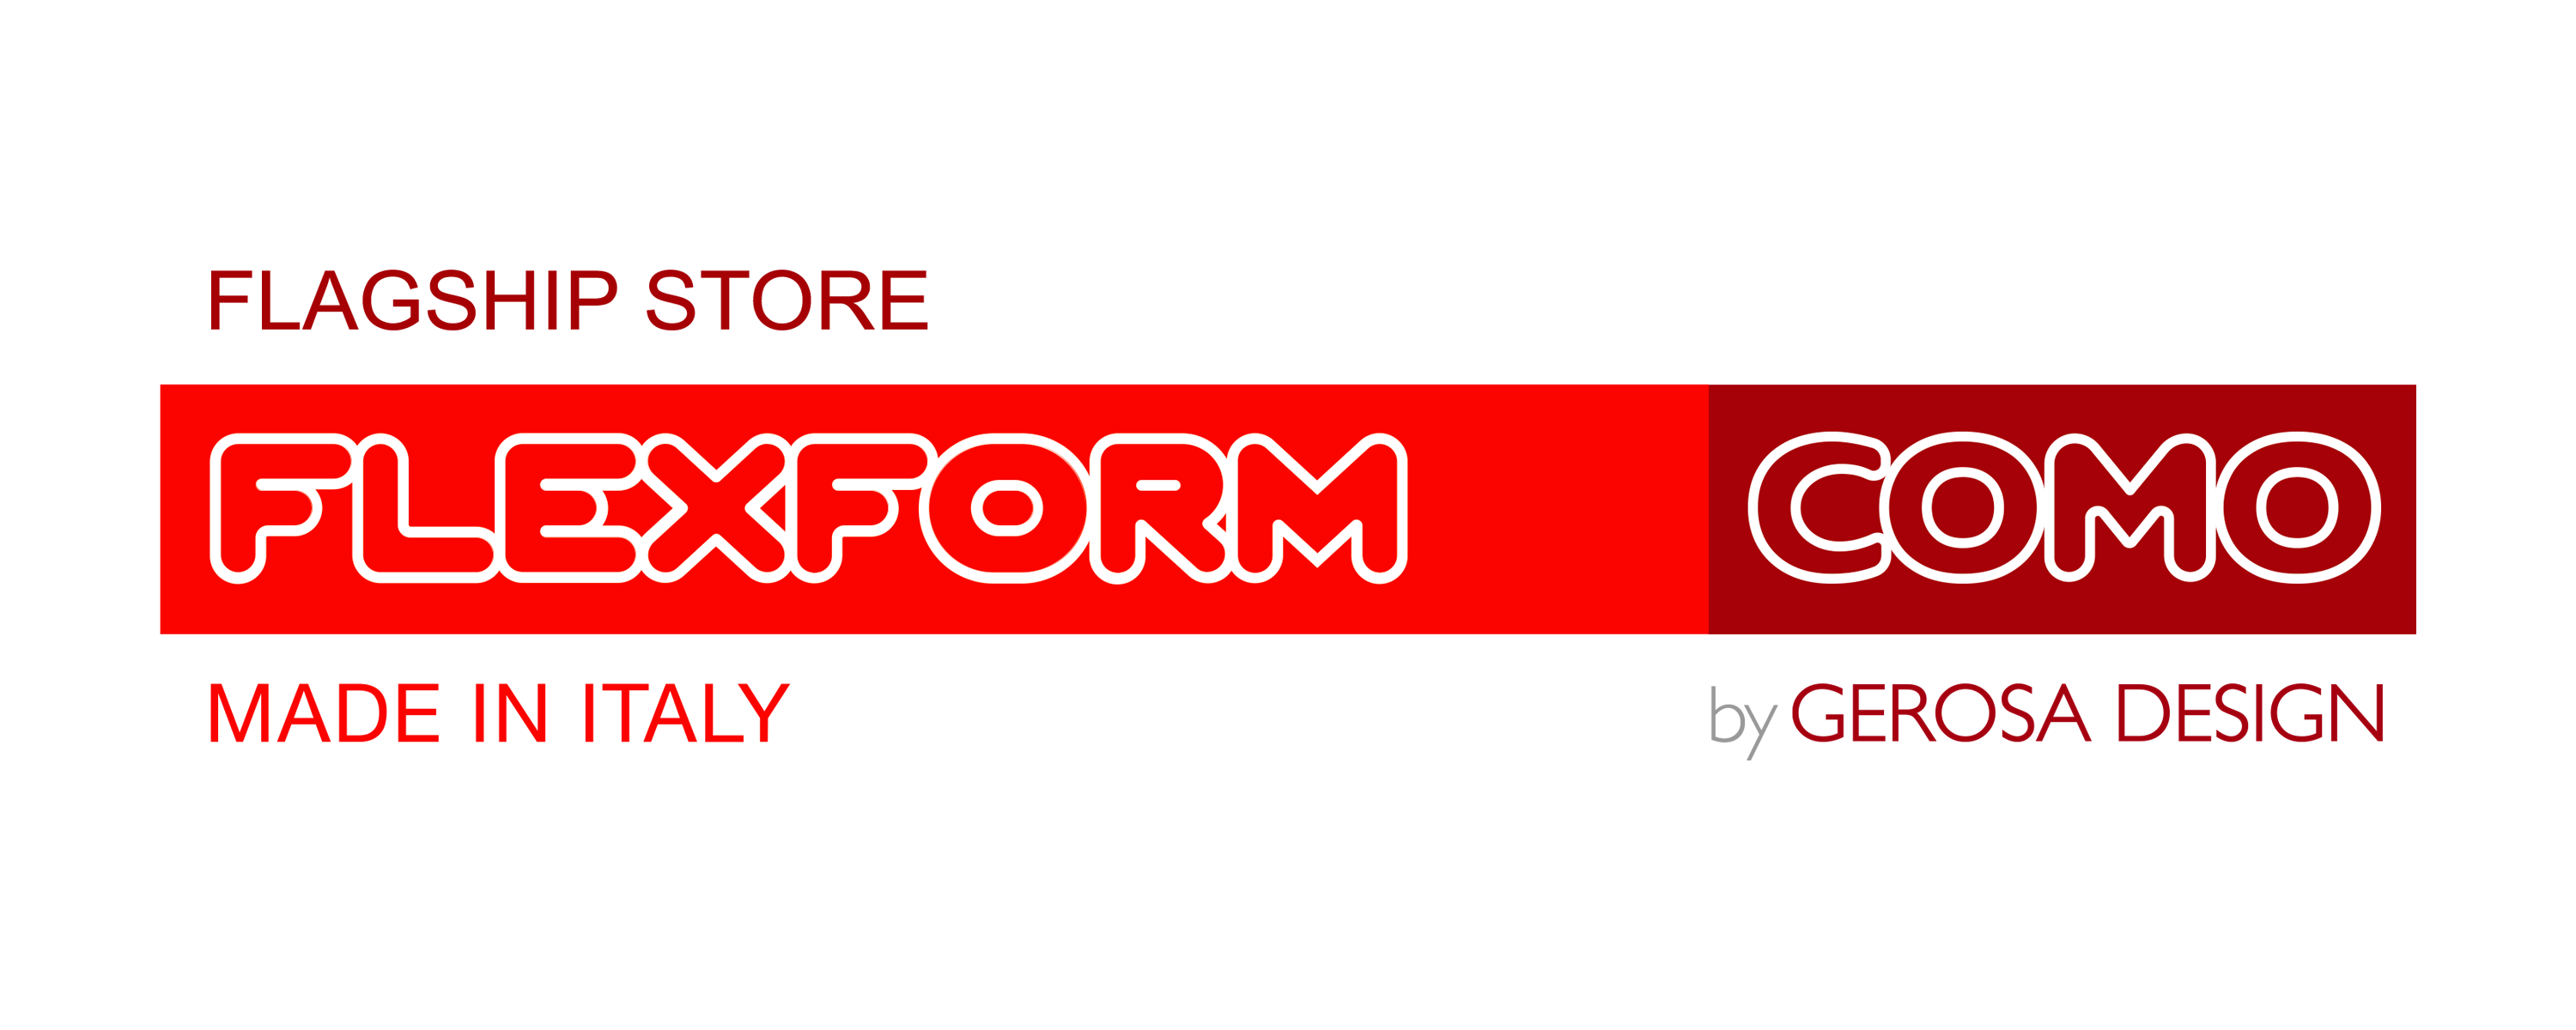 Flagship-Store Flexform Como